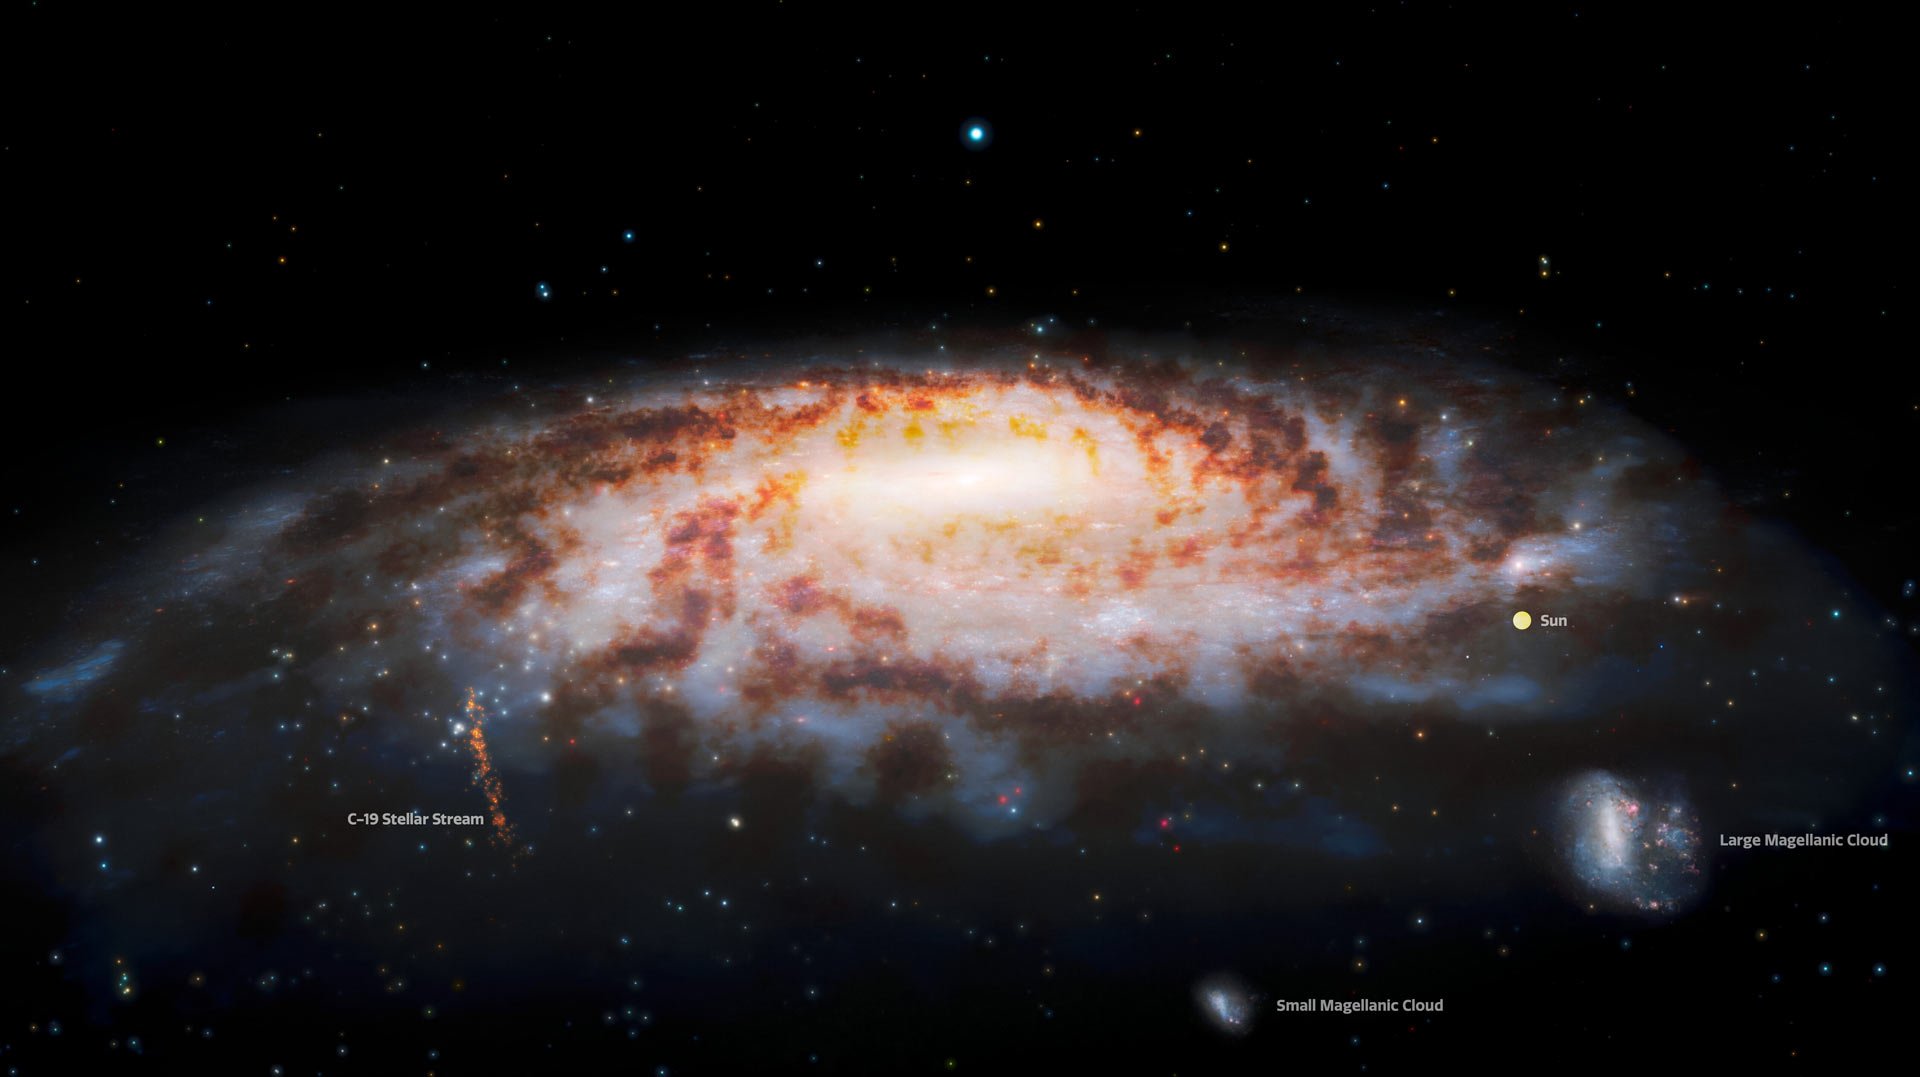 太陽、大麥哲倫星雲、小麥哲倫星雲及新發現的C-19恆星流（左下部）在銀河系內的相對位置圖。（Gemini Observatory/NOIRLab/NSF/AURA/J. da Silva/Spaceengine/M. Zamani.）